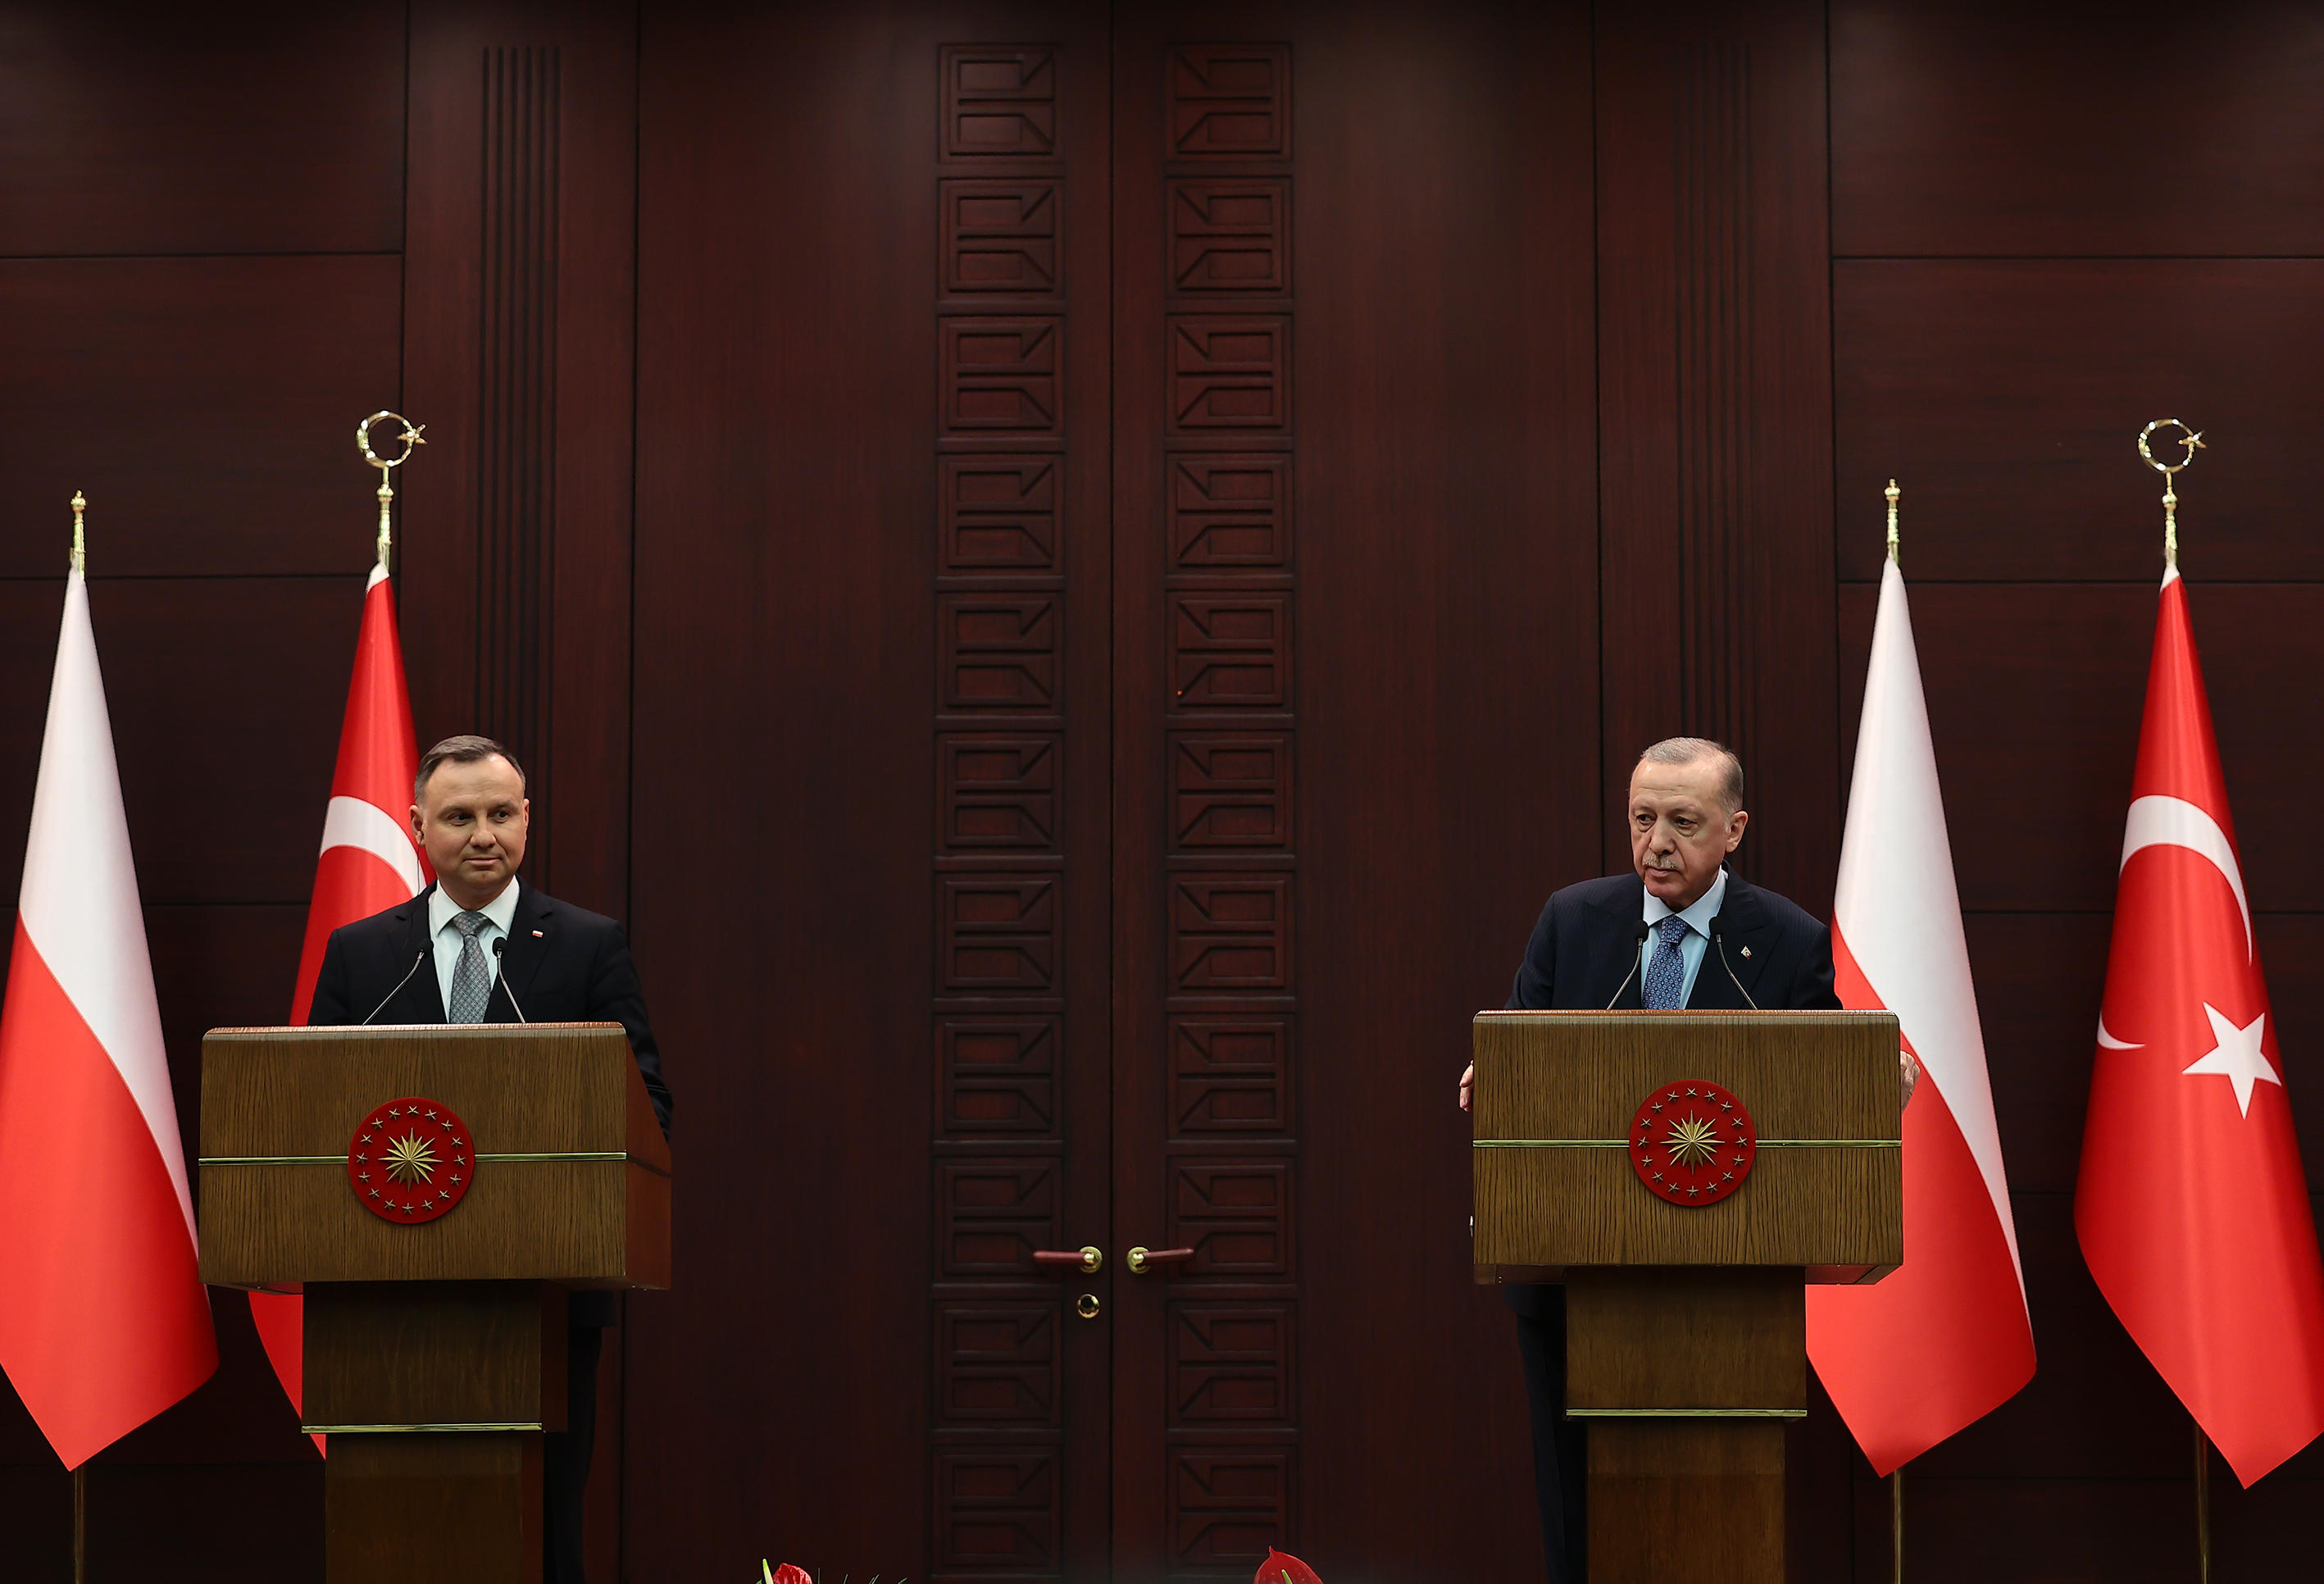 Canlı | Cumhurbaşkanı Erdoğan ve Polonya Cumhurbaşkanı Duda'dan önemli açıklamalar!